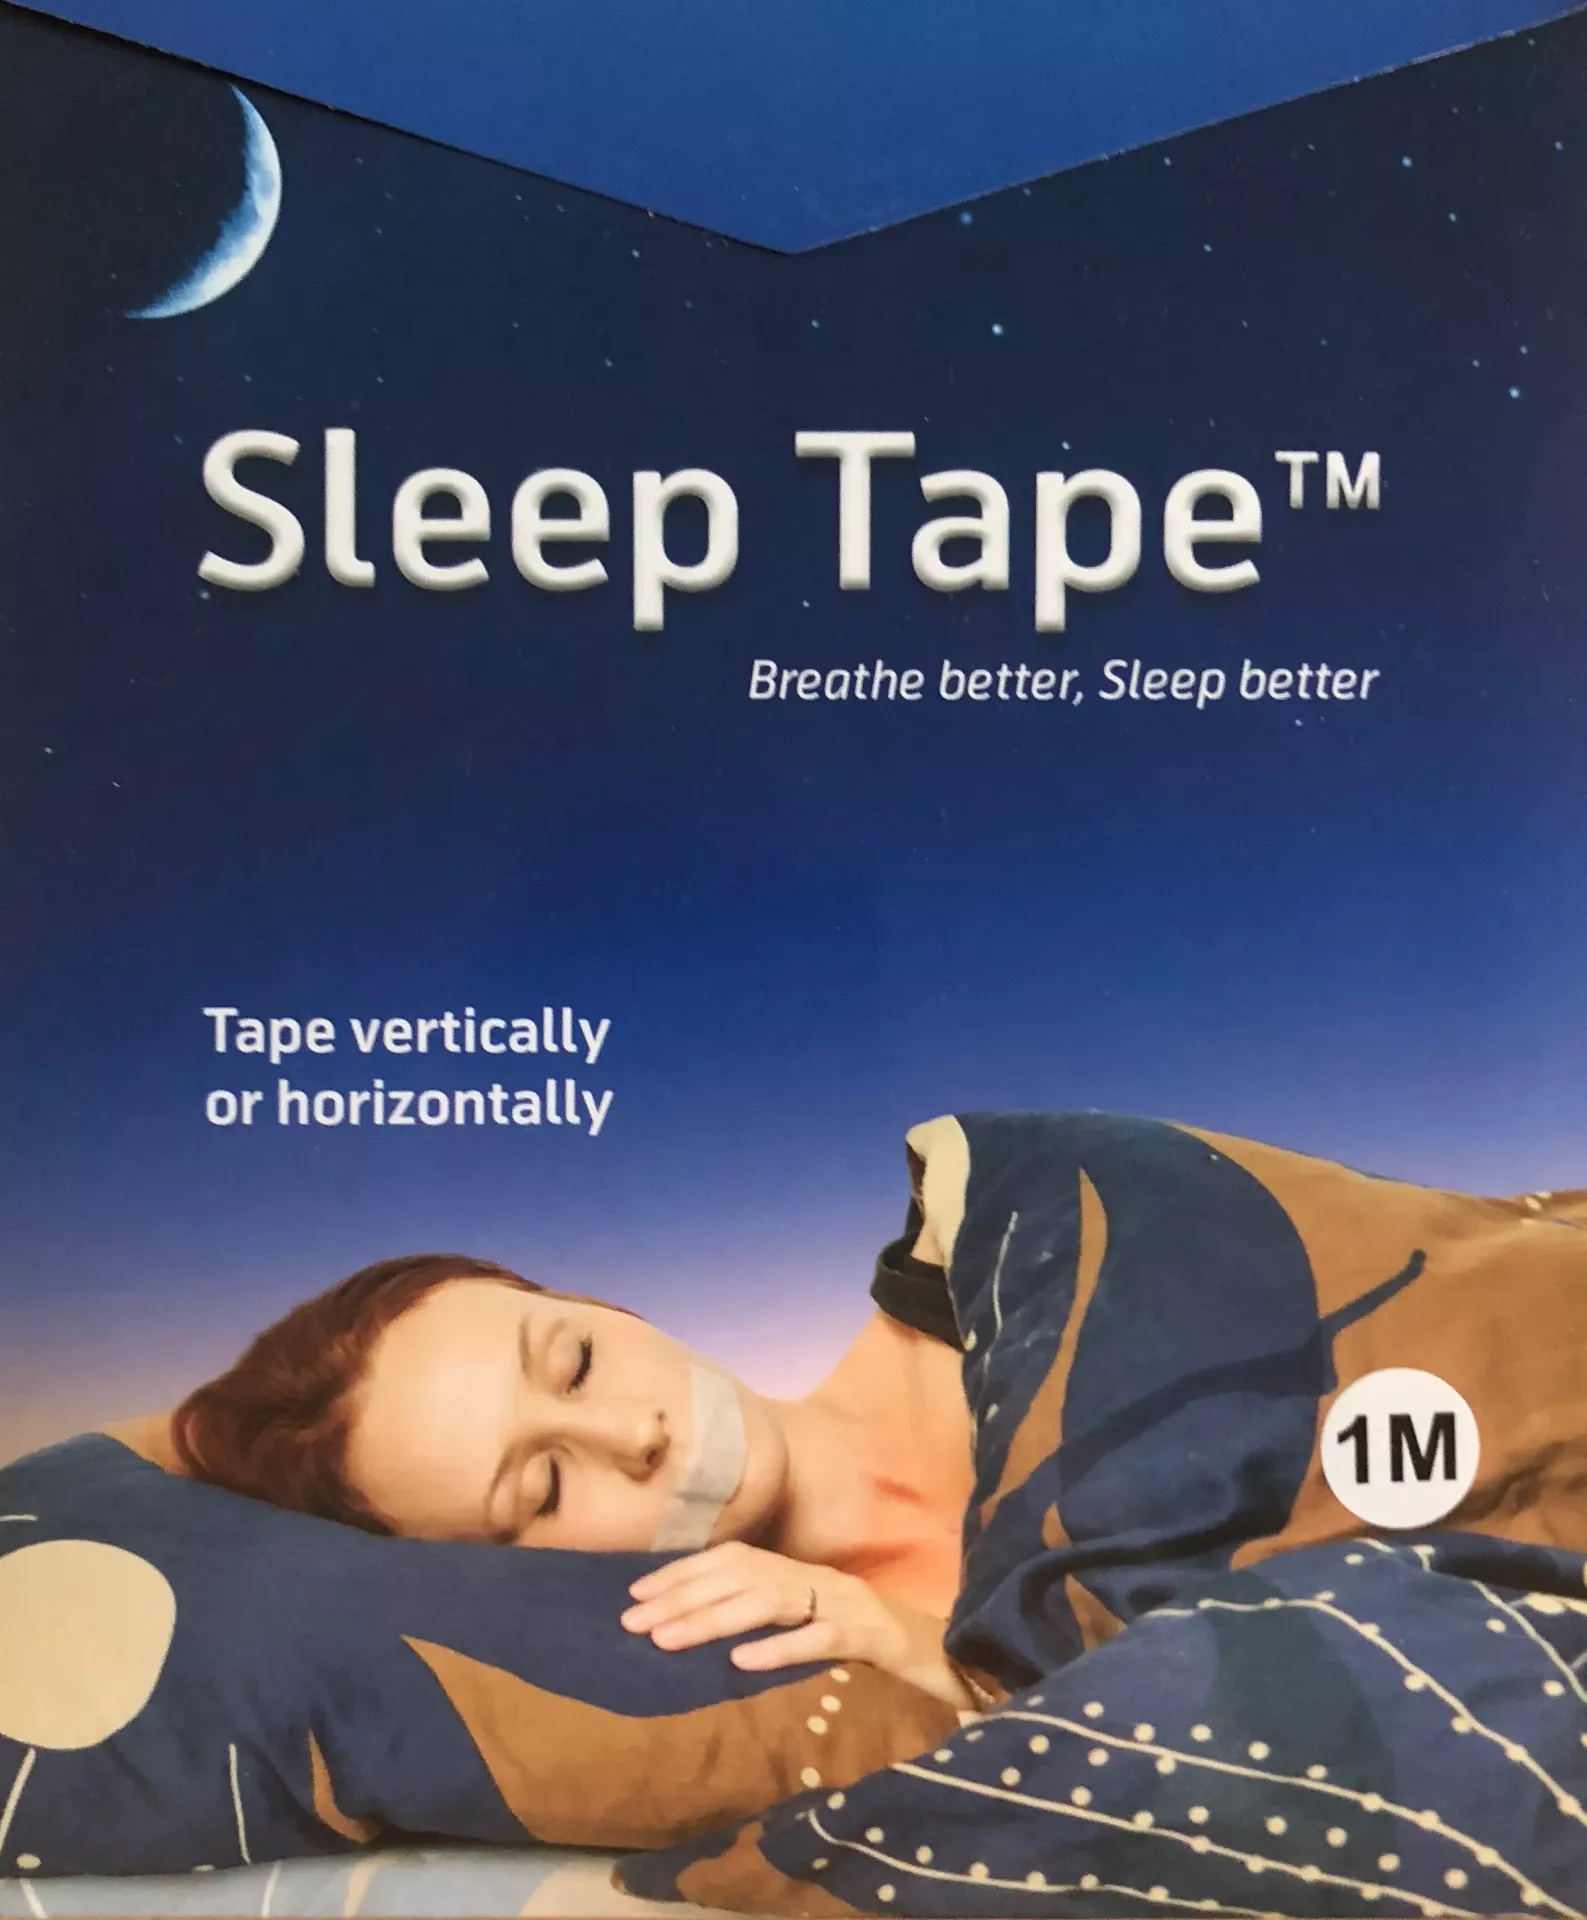 Sleep tape 1M - lepící páska pro dýchání nosem na 1 měsíc